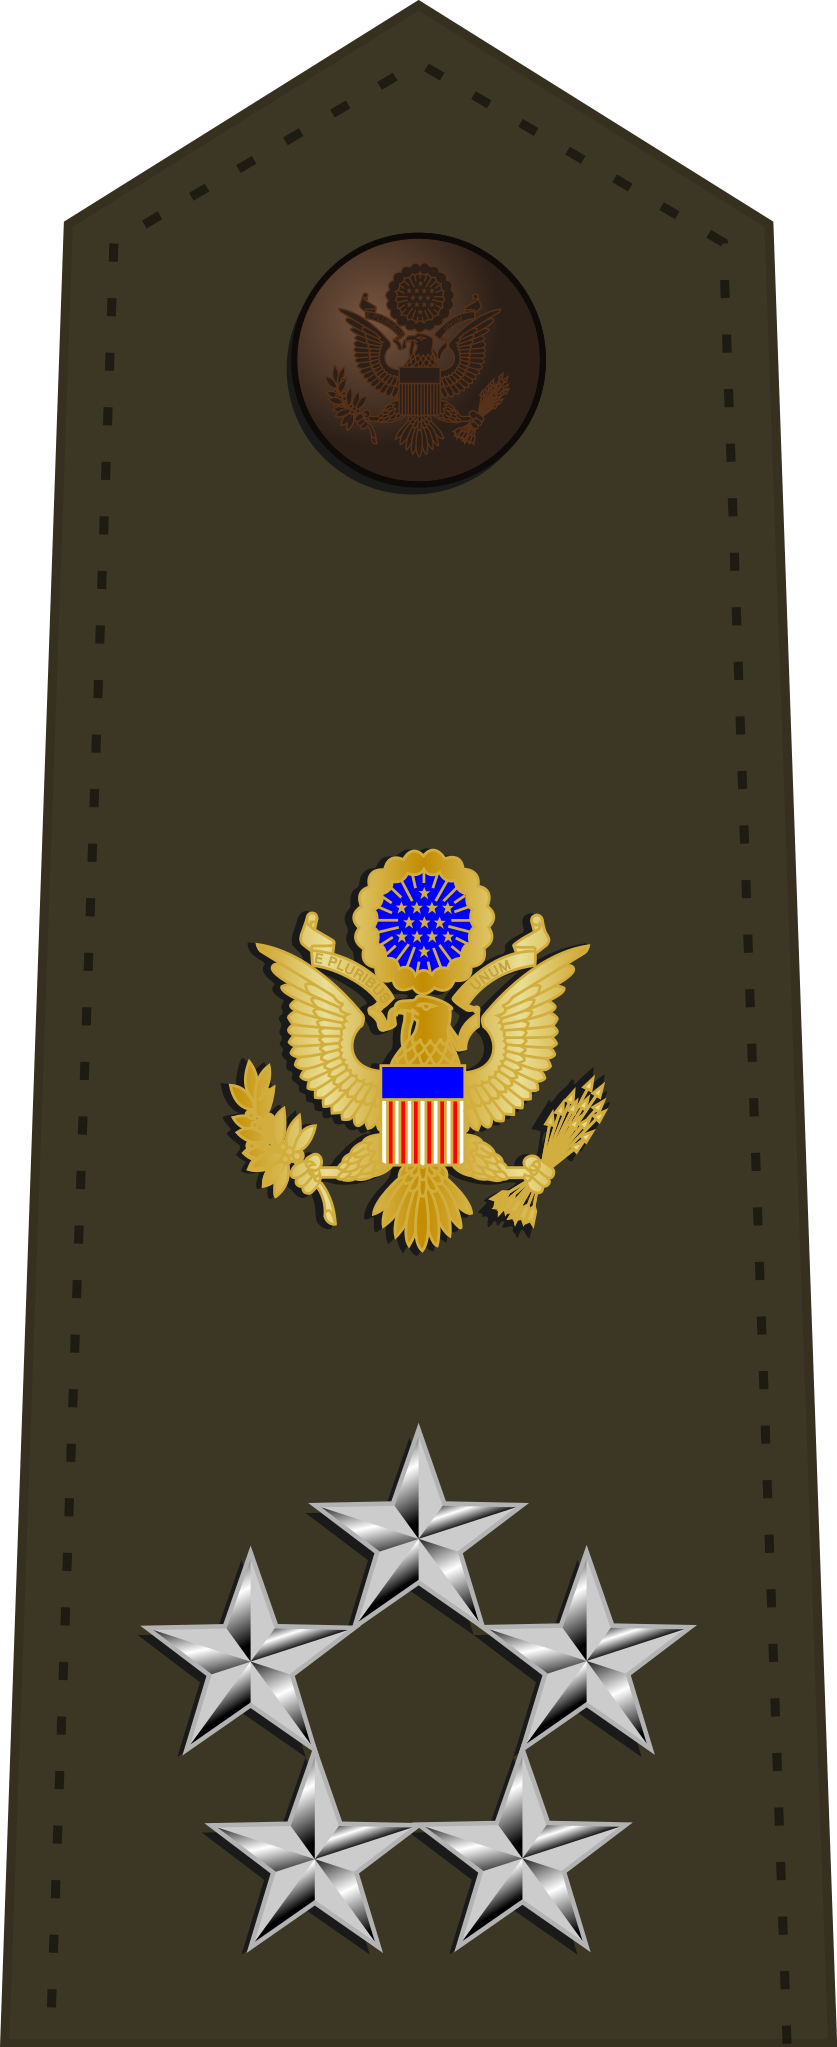 生活 日常 美国武装部队军衔 美国陆军军衔 最高军衔 特级上将,五星